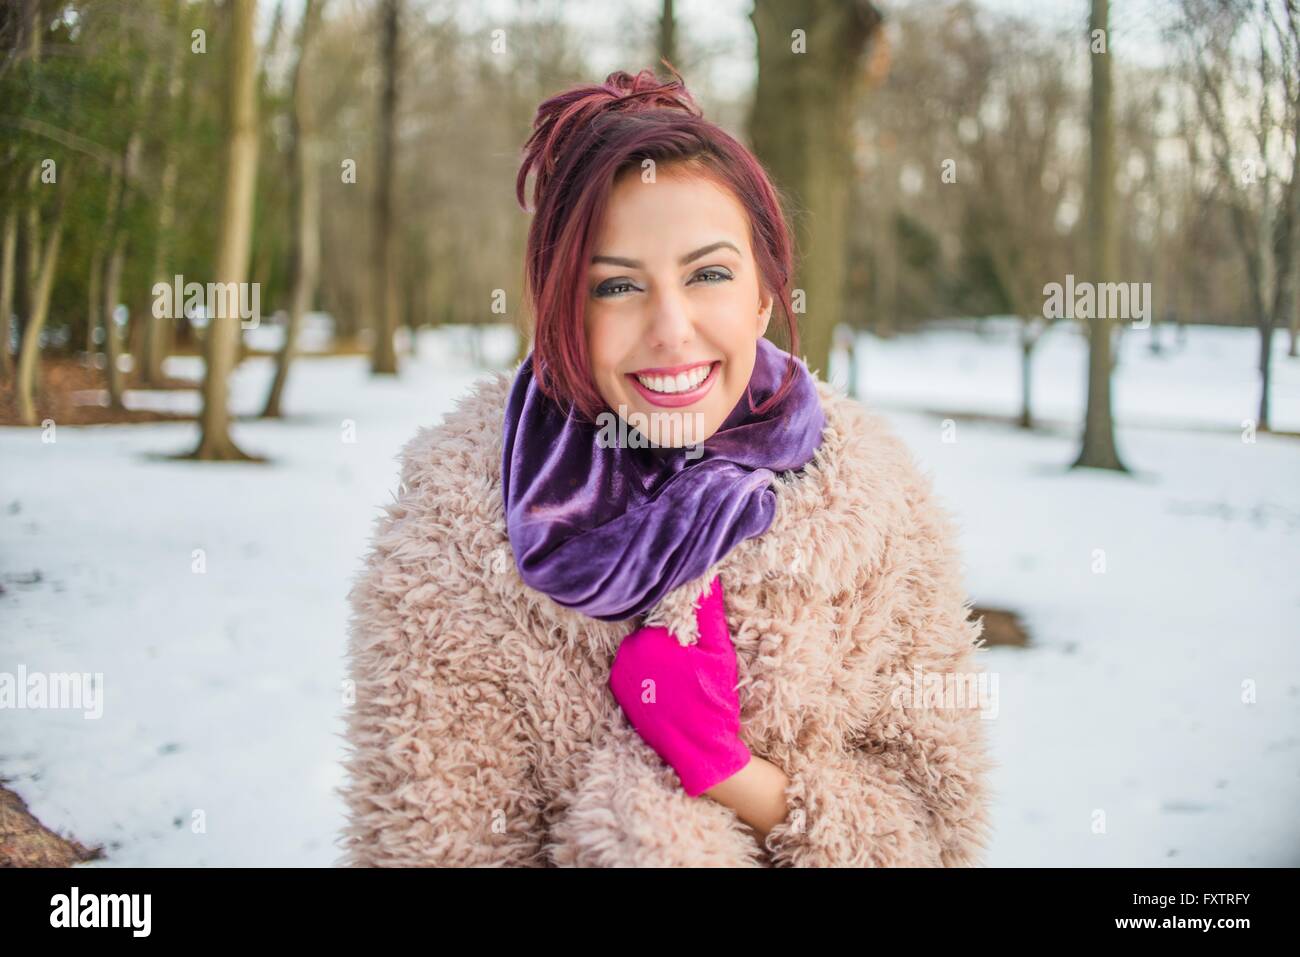 Portrait de jeune femme dans le parc couvert de neige, smiling Banque D'Images